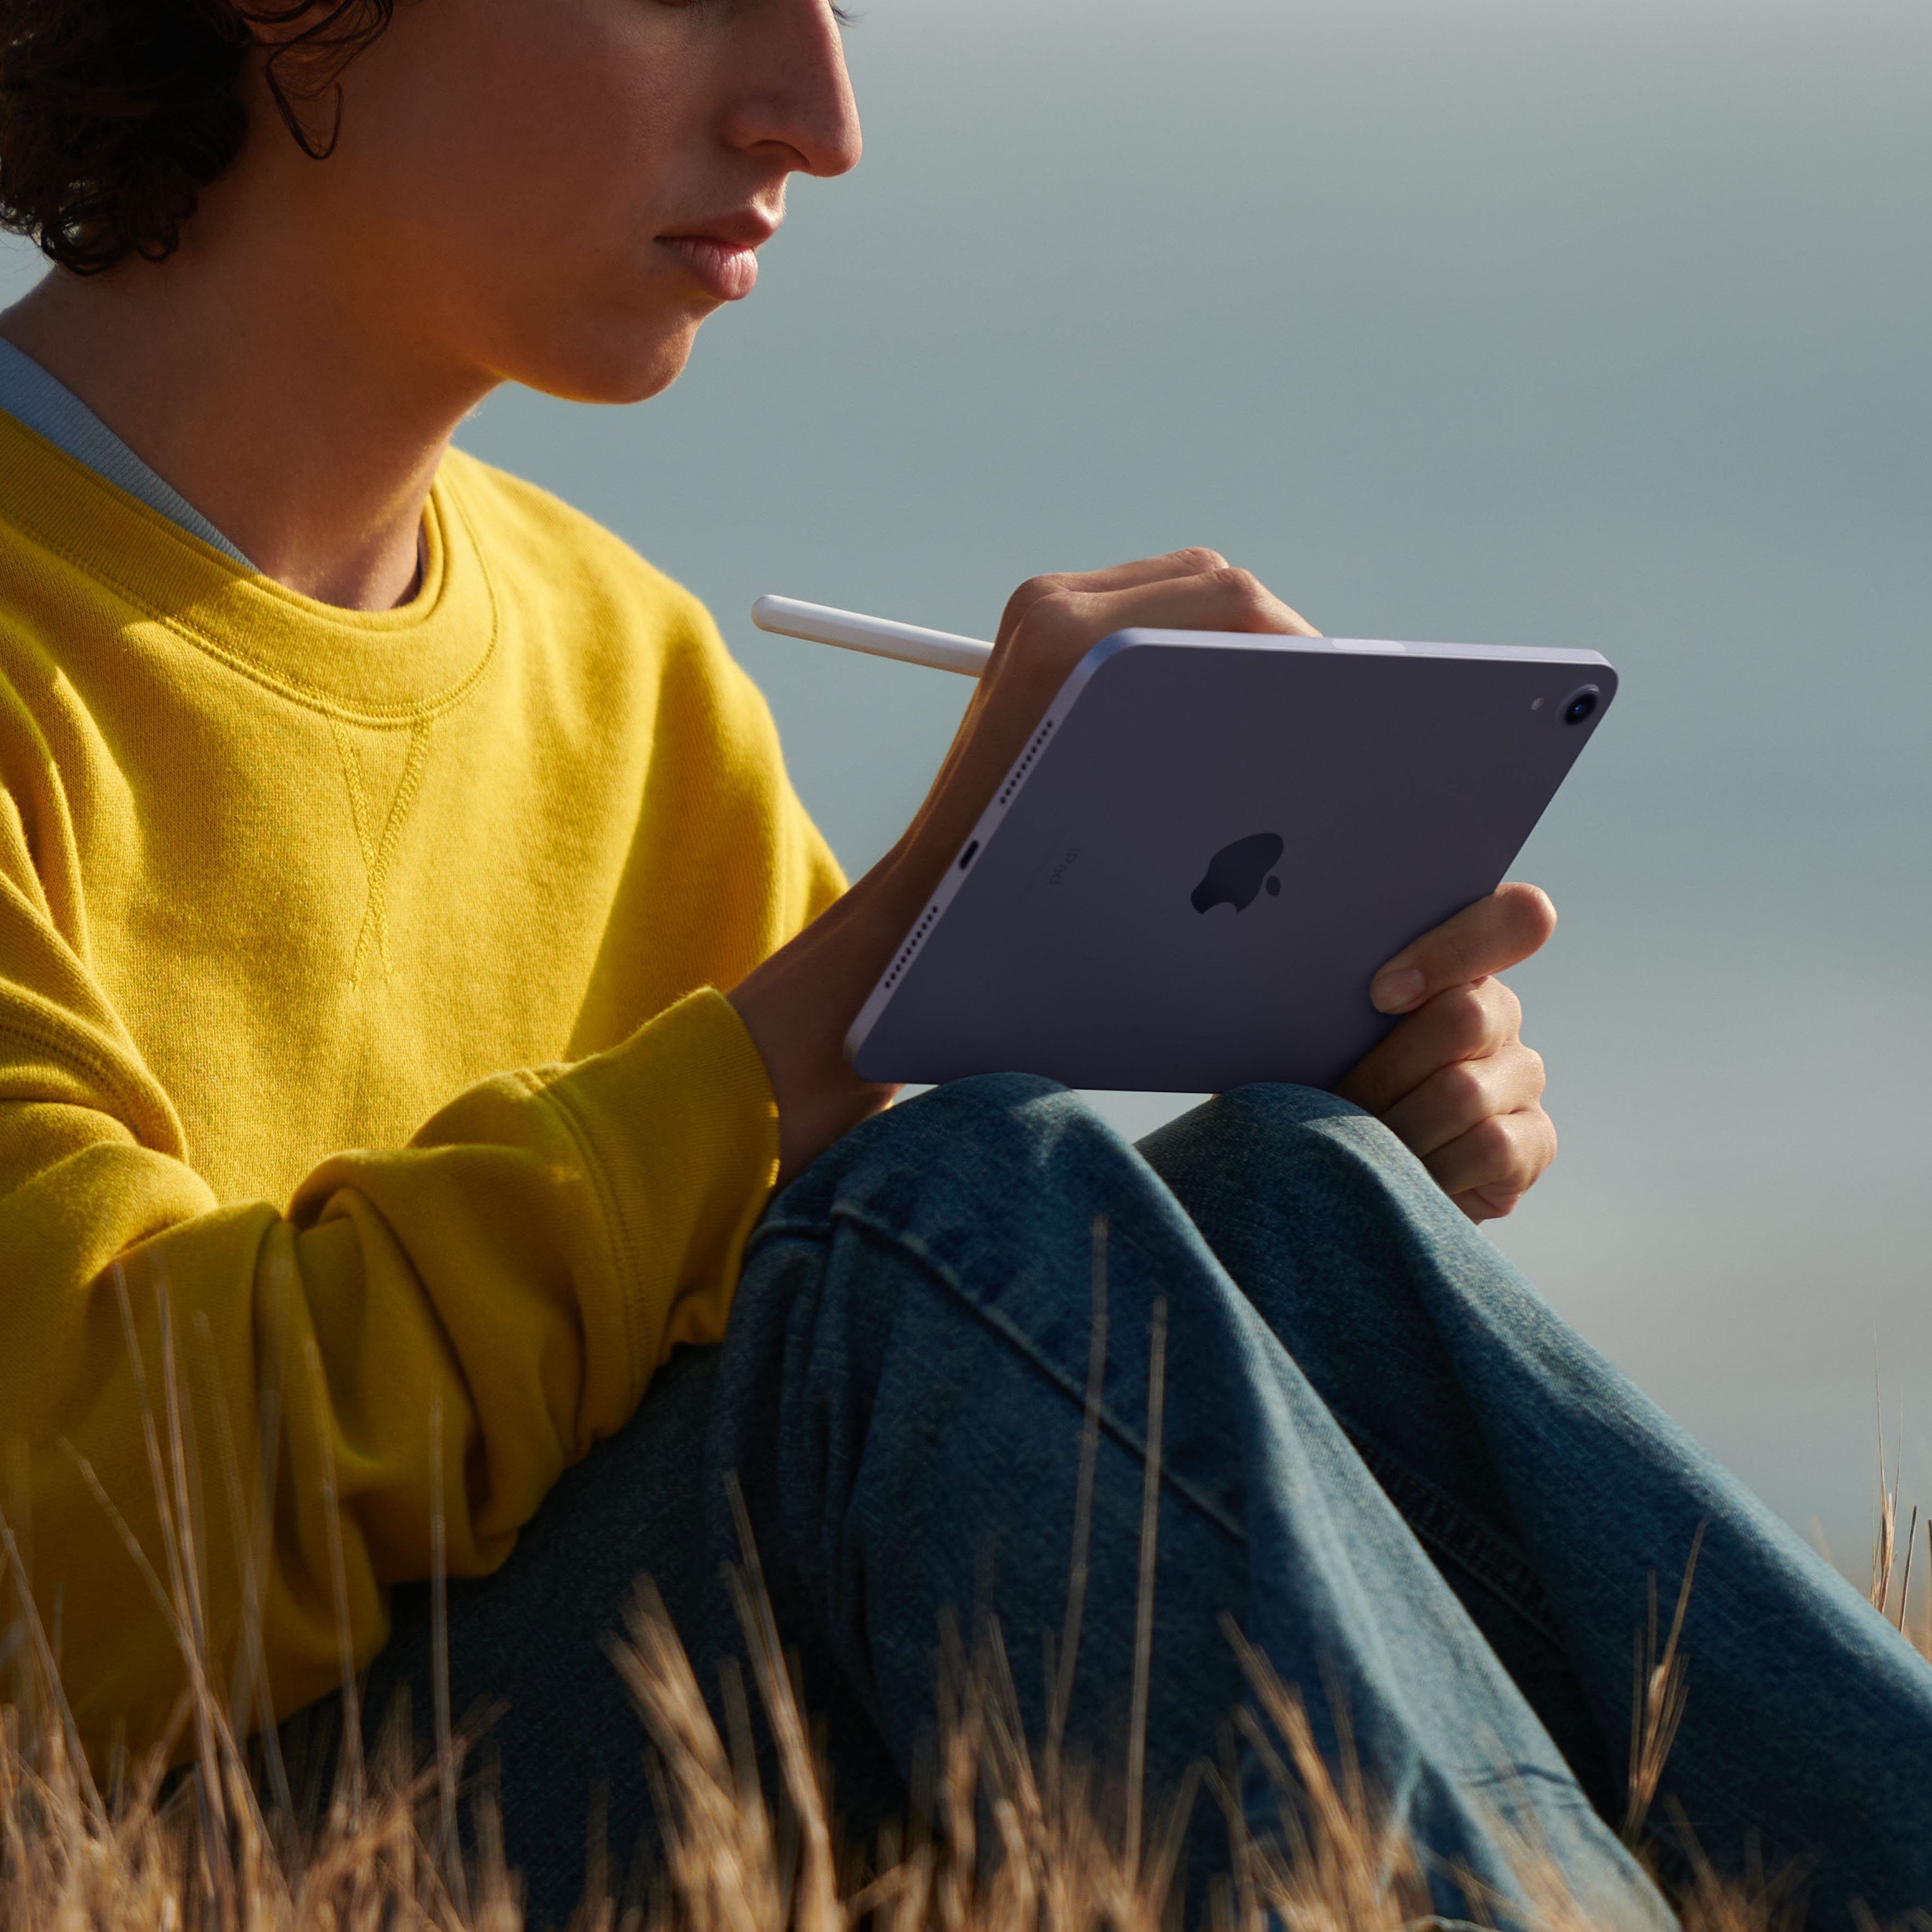 Purple Tablet iPadOS) mini 256 Apple Wi-Fi (2021) GB, iPad (8,3",